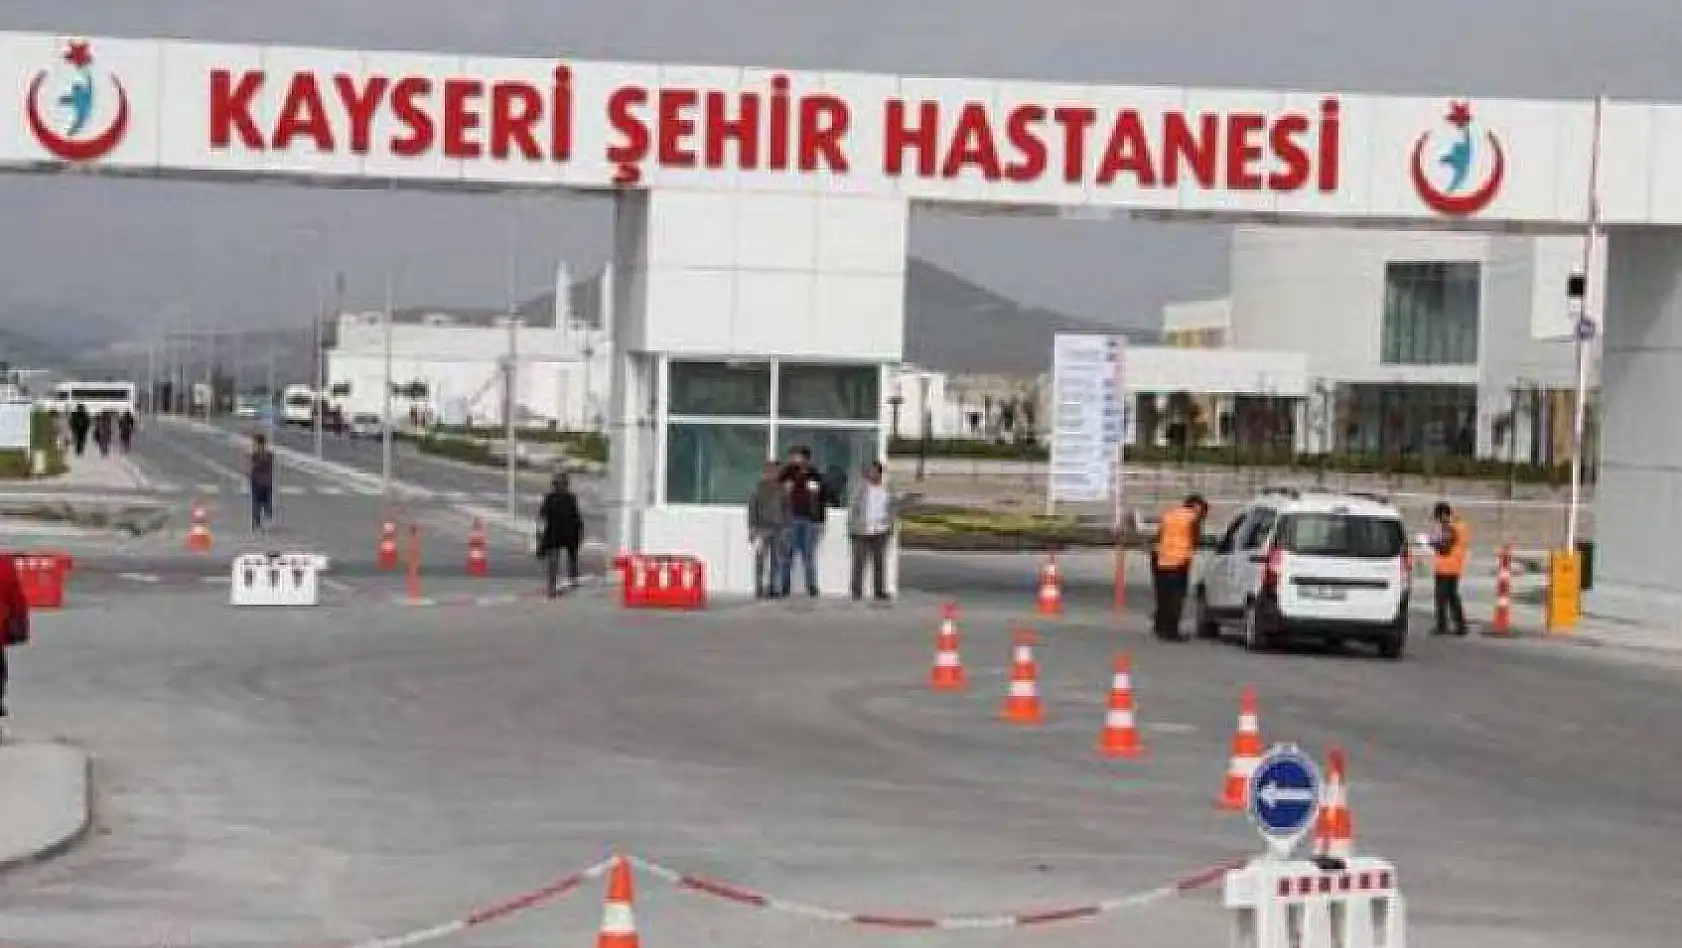 İşte Kayseri'de son durum... Coranavirüs Kayseri'de ürkütüyor...